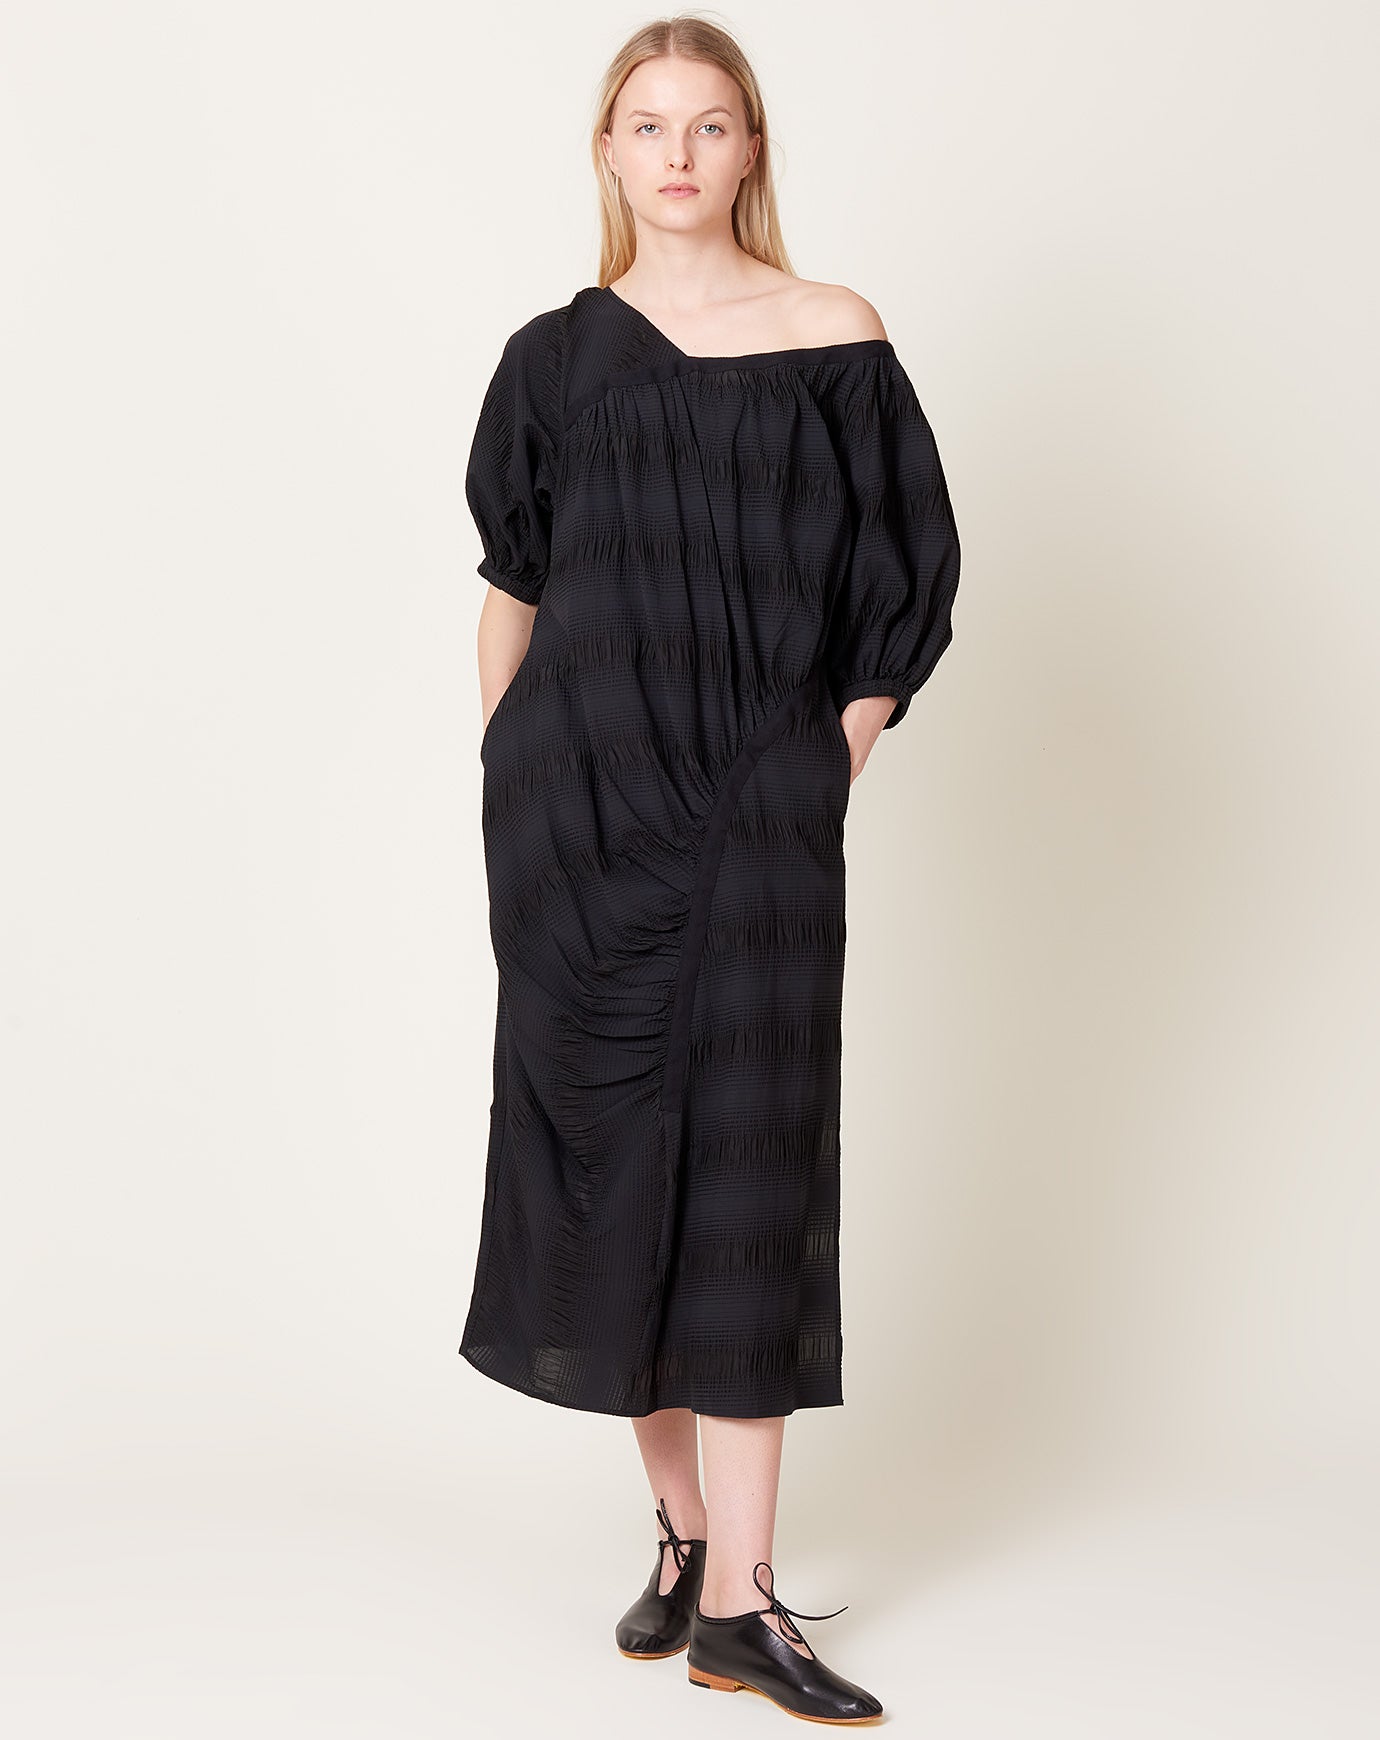 Rachel Comey Delerium Dress in Black Pucker